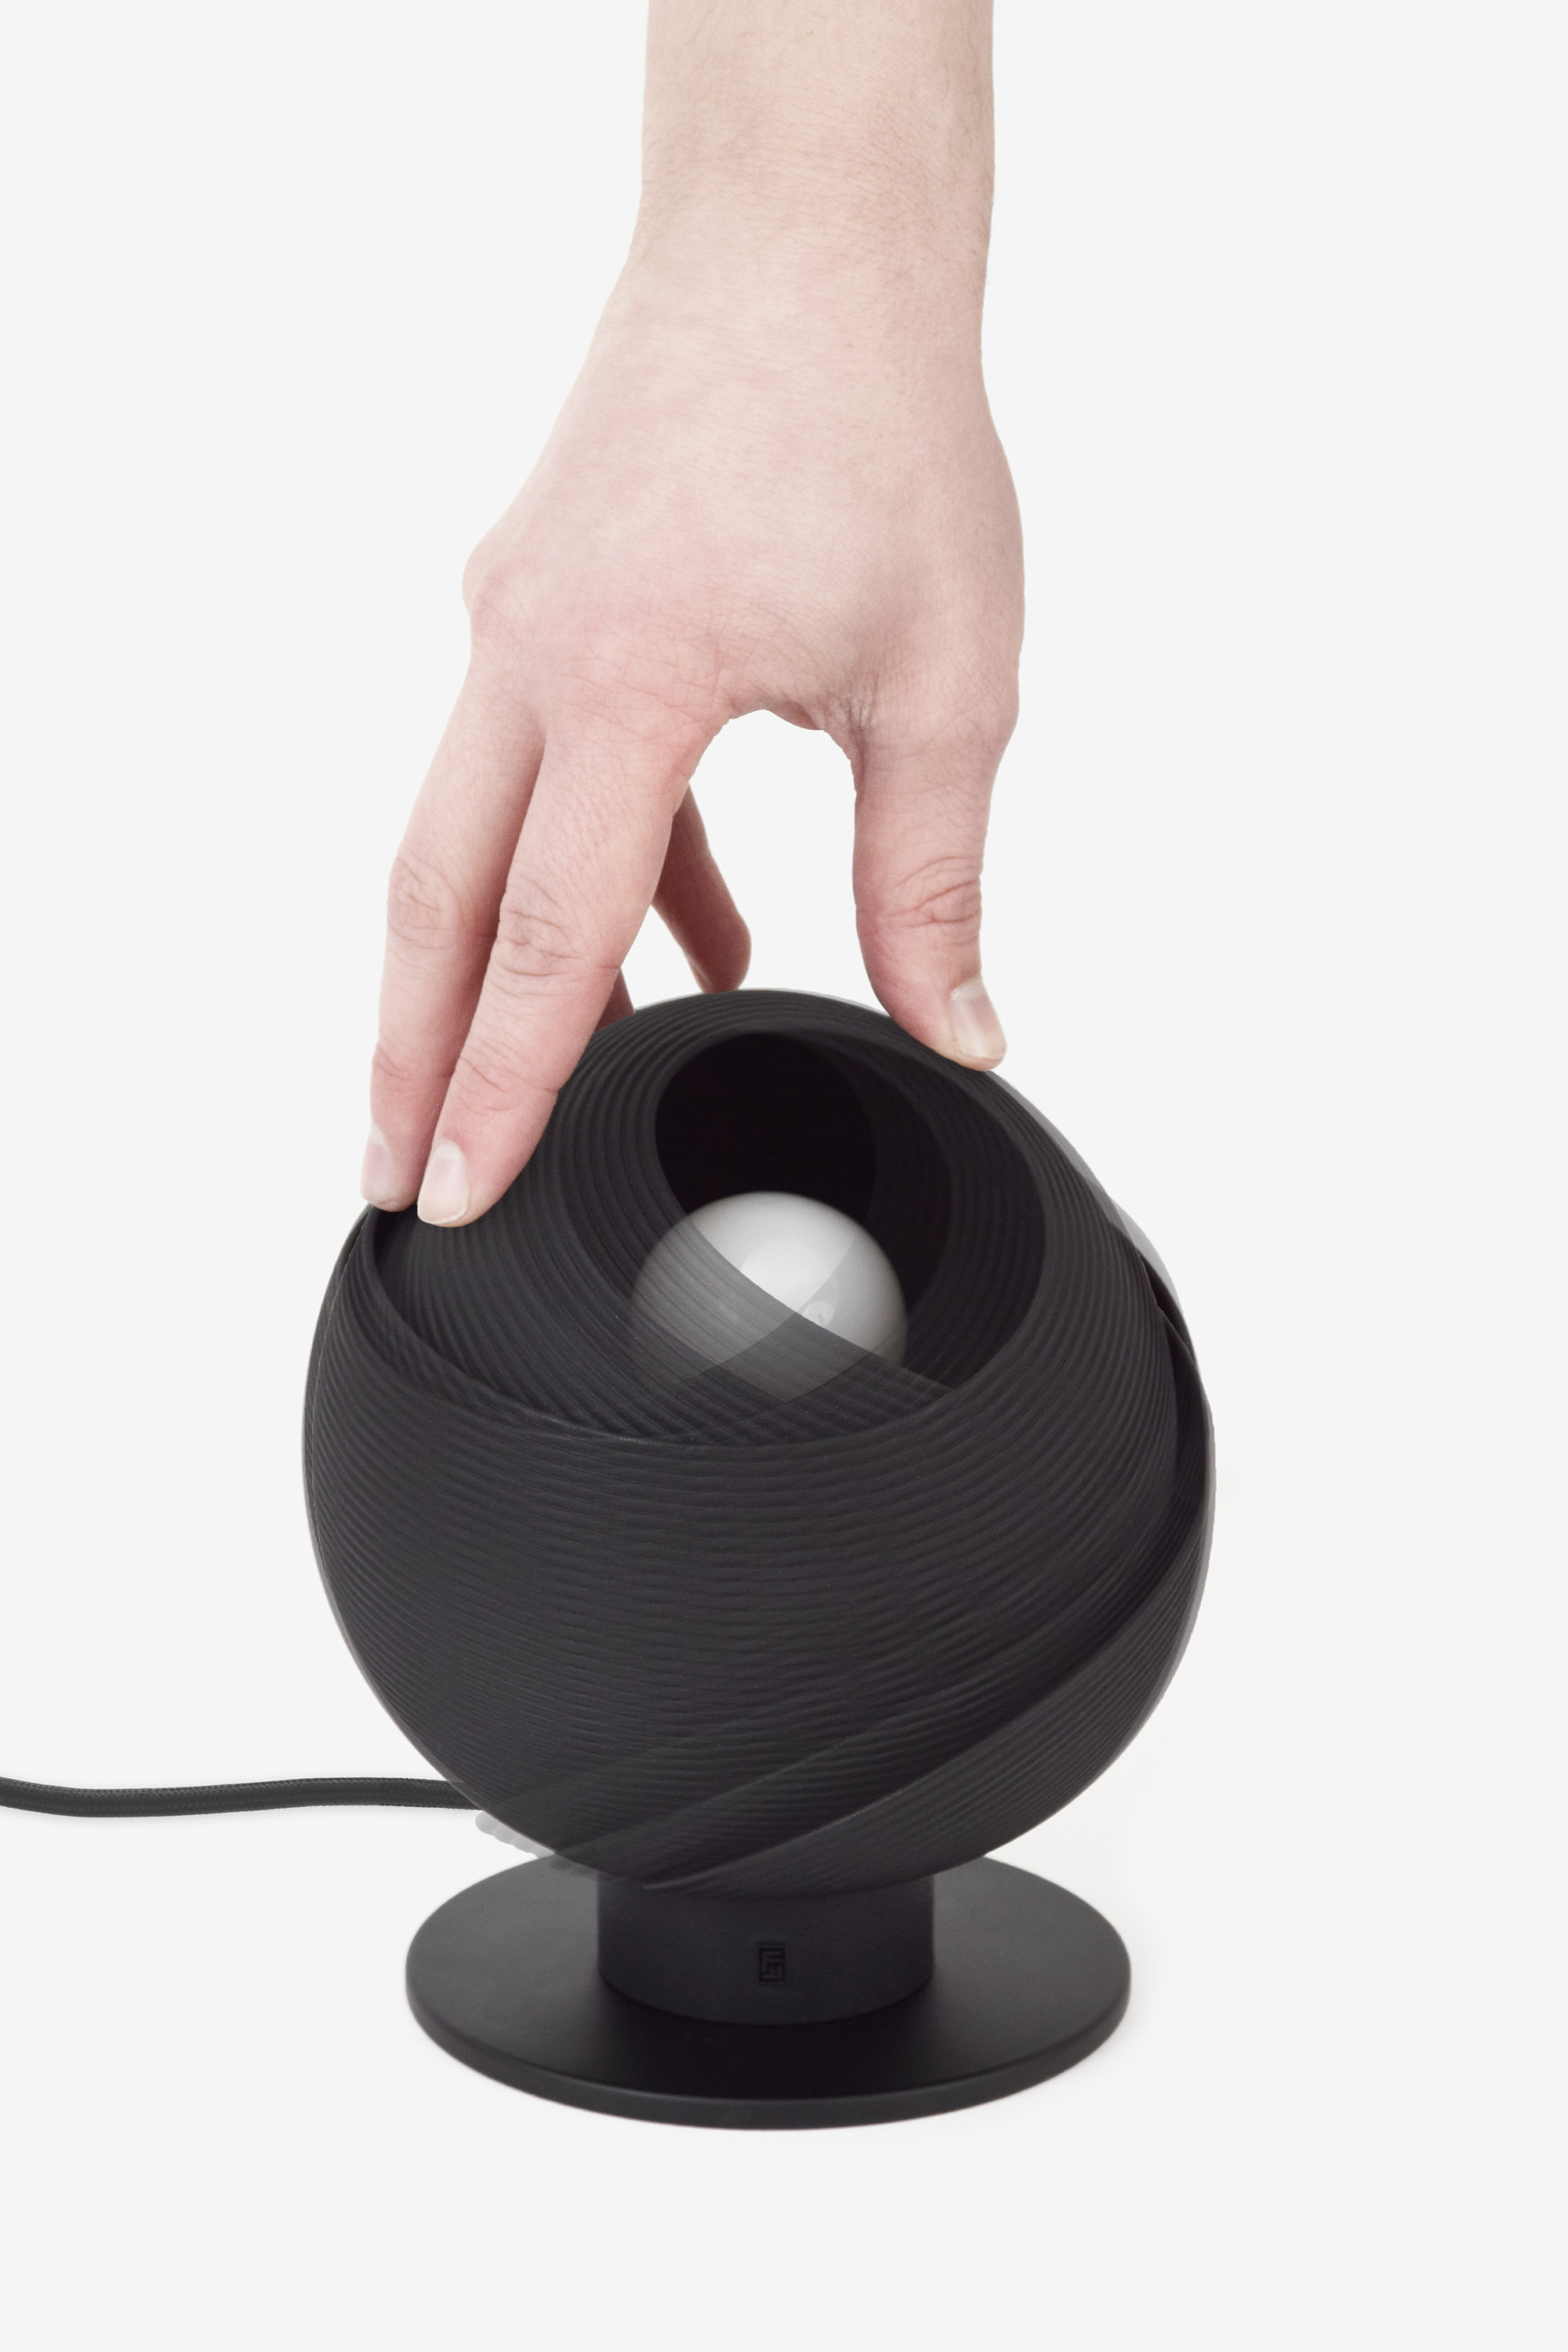 Rotating | Fold Lamp, Design by Matthijs Kok for Freshfiber